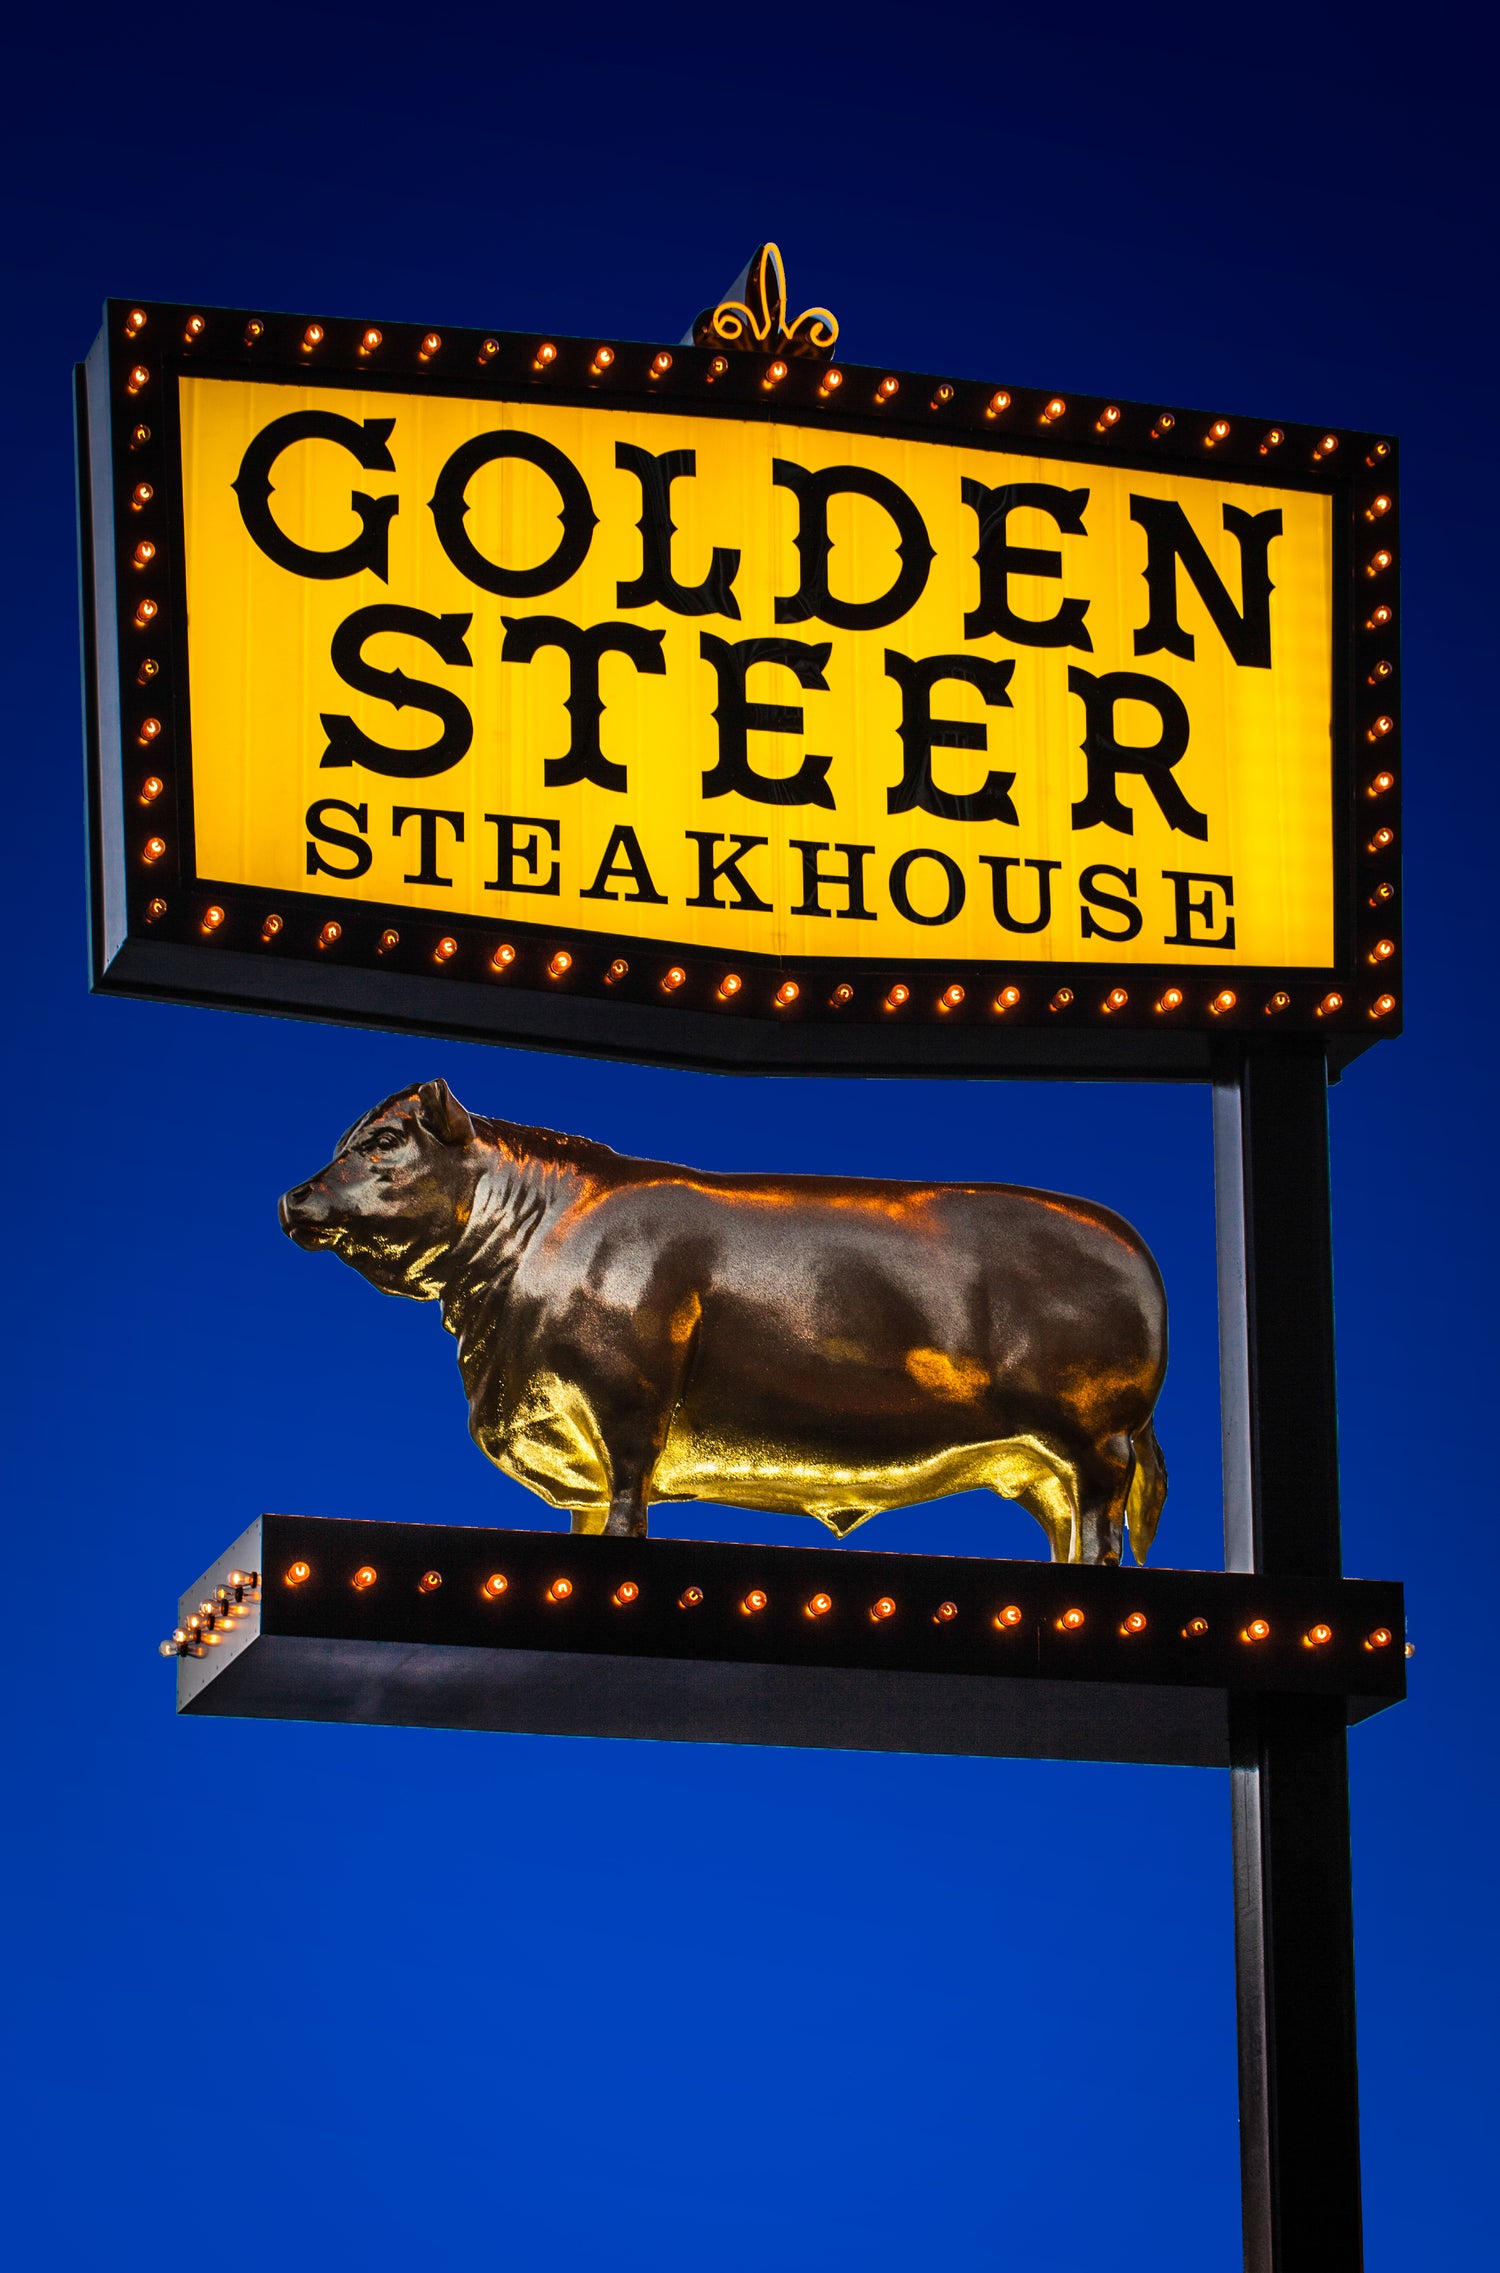 Golden Steer Steakhouse logo on fluorescent blue background